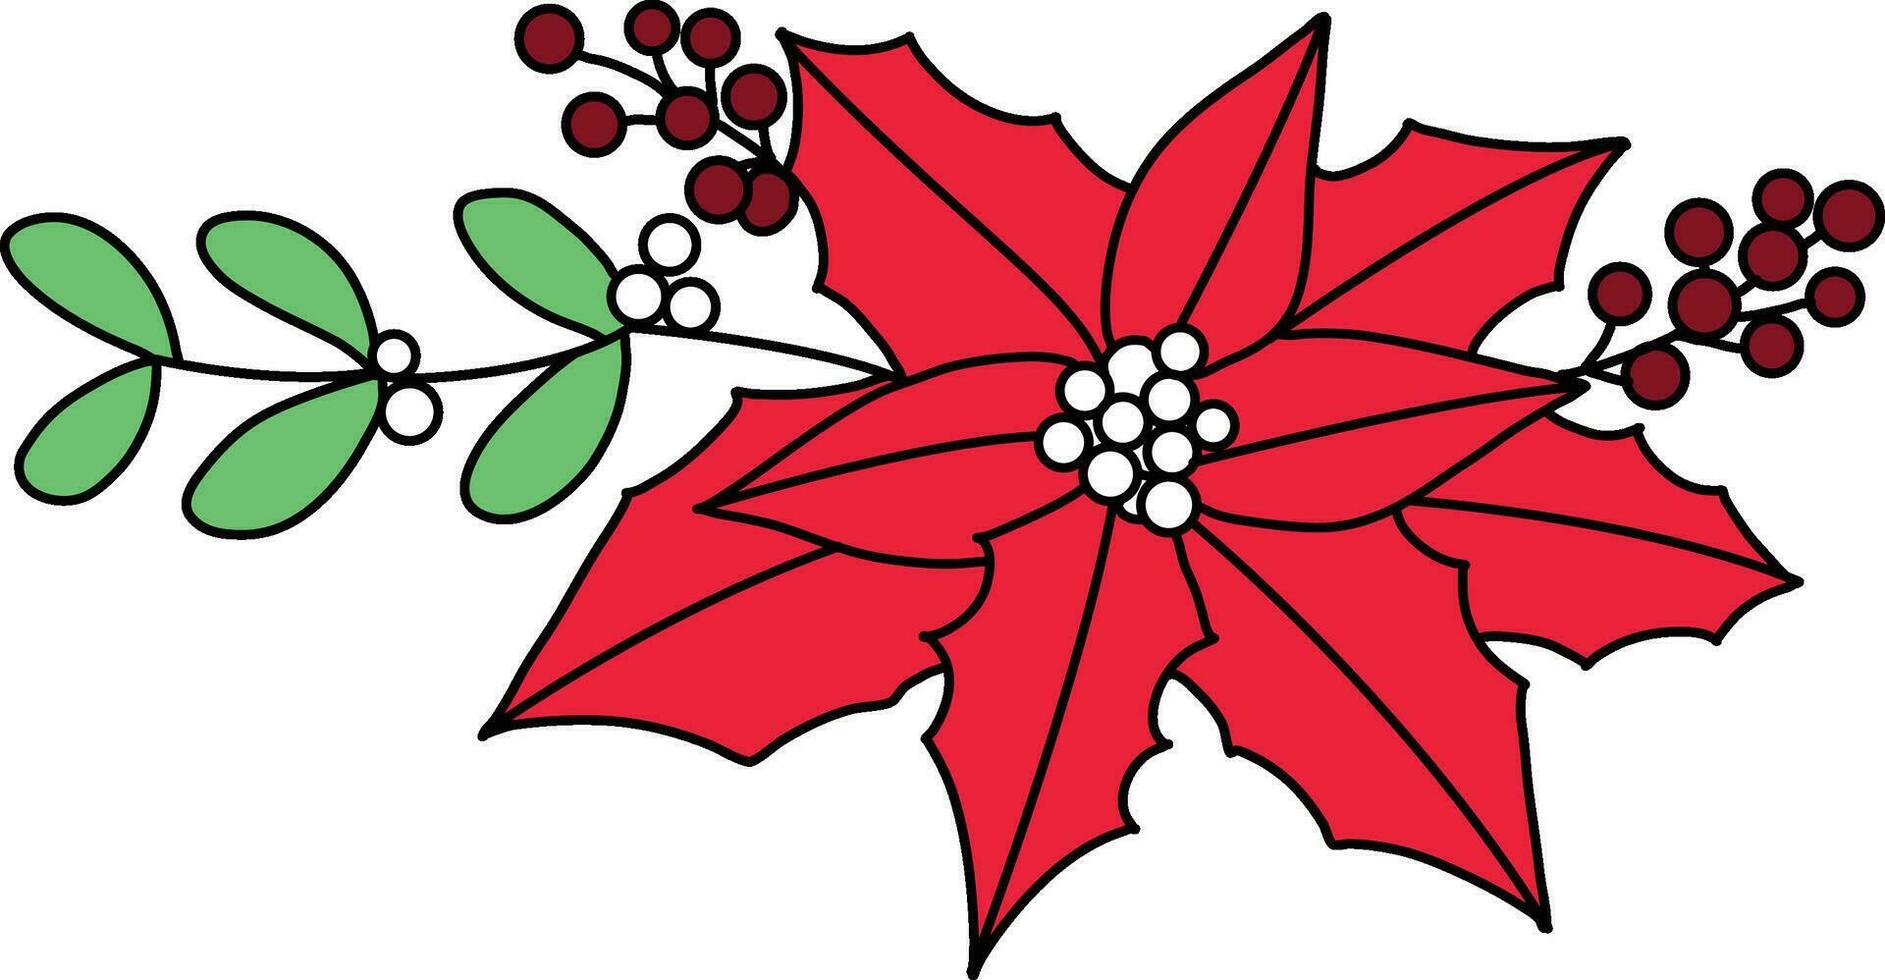 jul stjärna röd Färg med enkel rader är Begagnade till komplement jul konstverk. julstjärna, med både blommor och löv dragen som en blommig arrangemang, är placerad i en pott för jul vektor